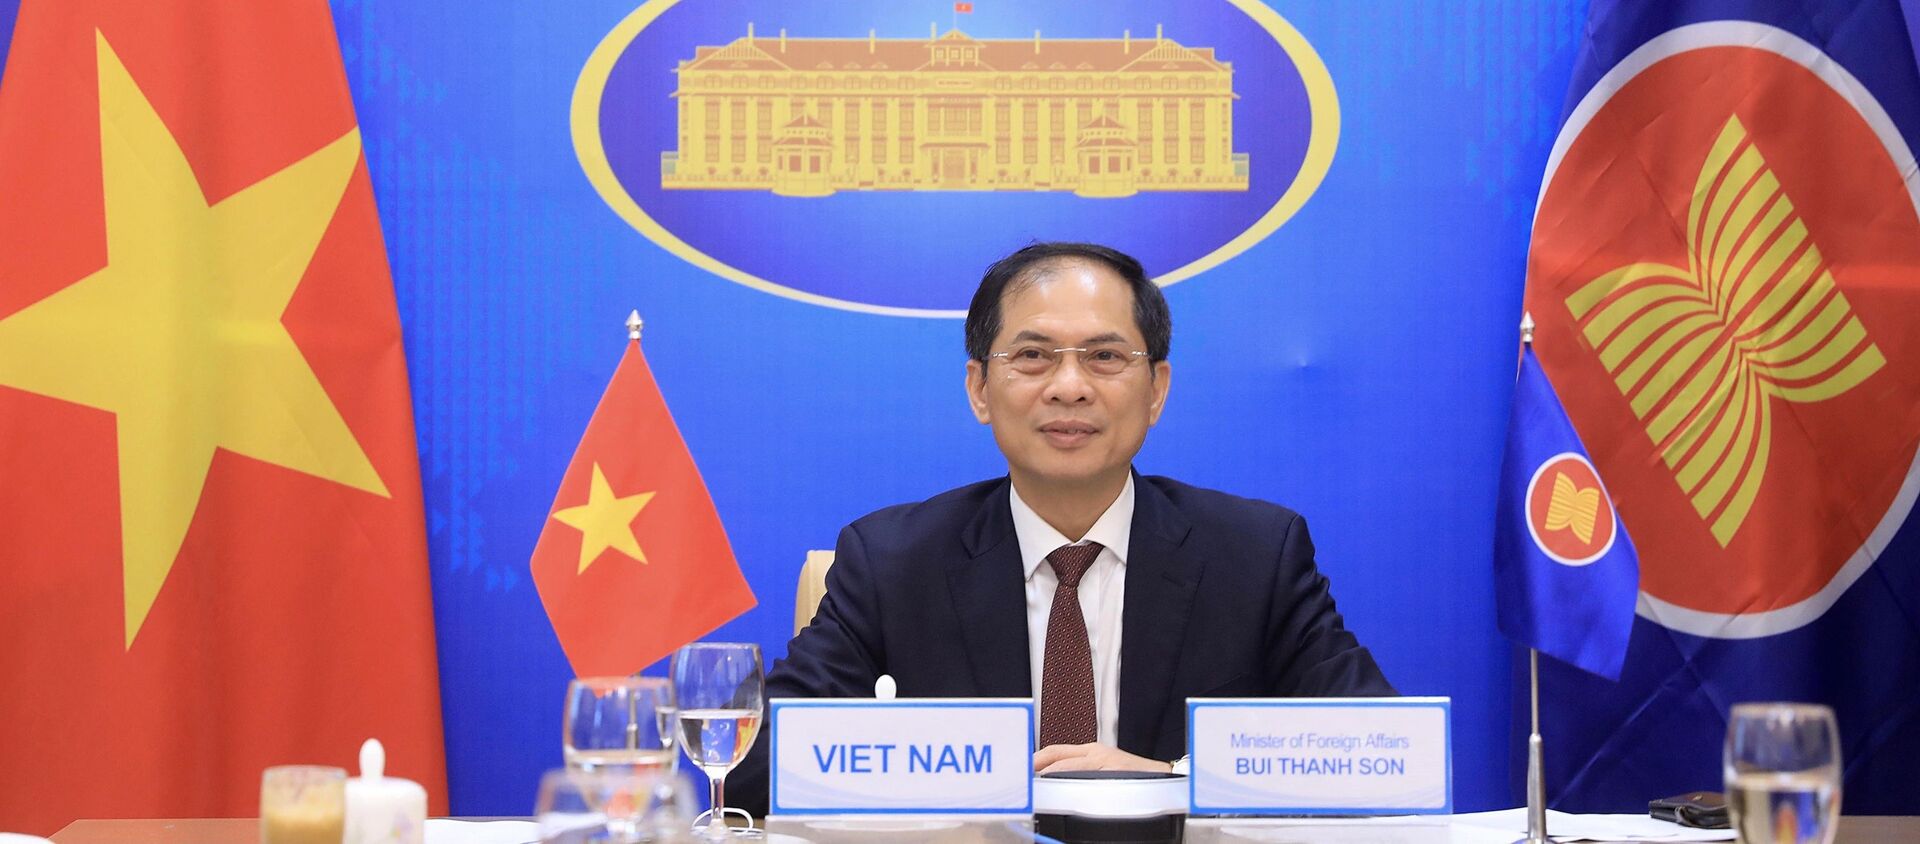 Bộ trưởng Ngoại giao Bùi Thanh Sơn dự tại Hội nghị đặc biệt Bộ trưởng Ngoại giao ASEAN - Hoa Kỳ. - Sputnik Việt Nam, 1920, 14.07.2021